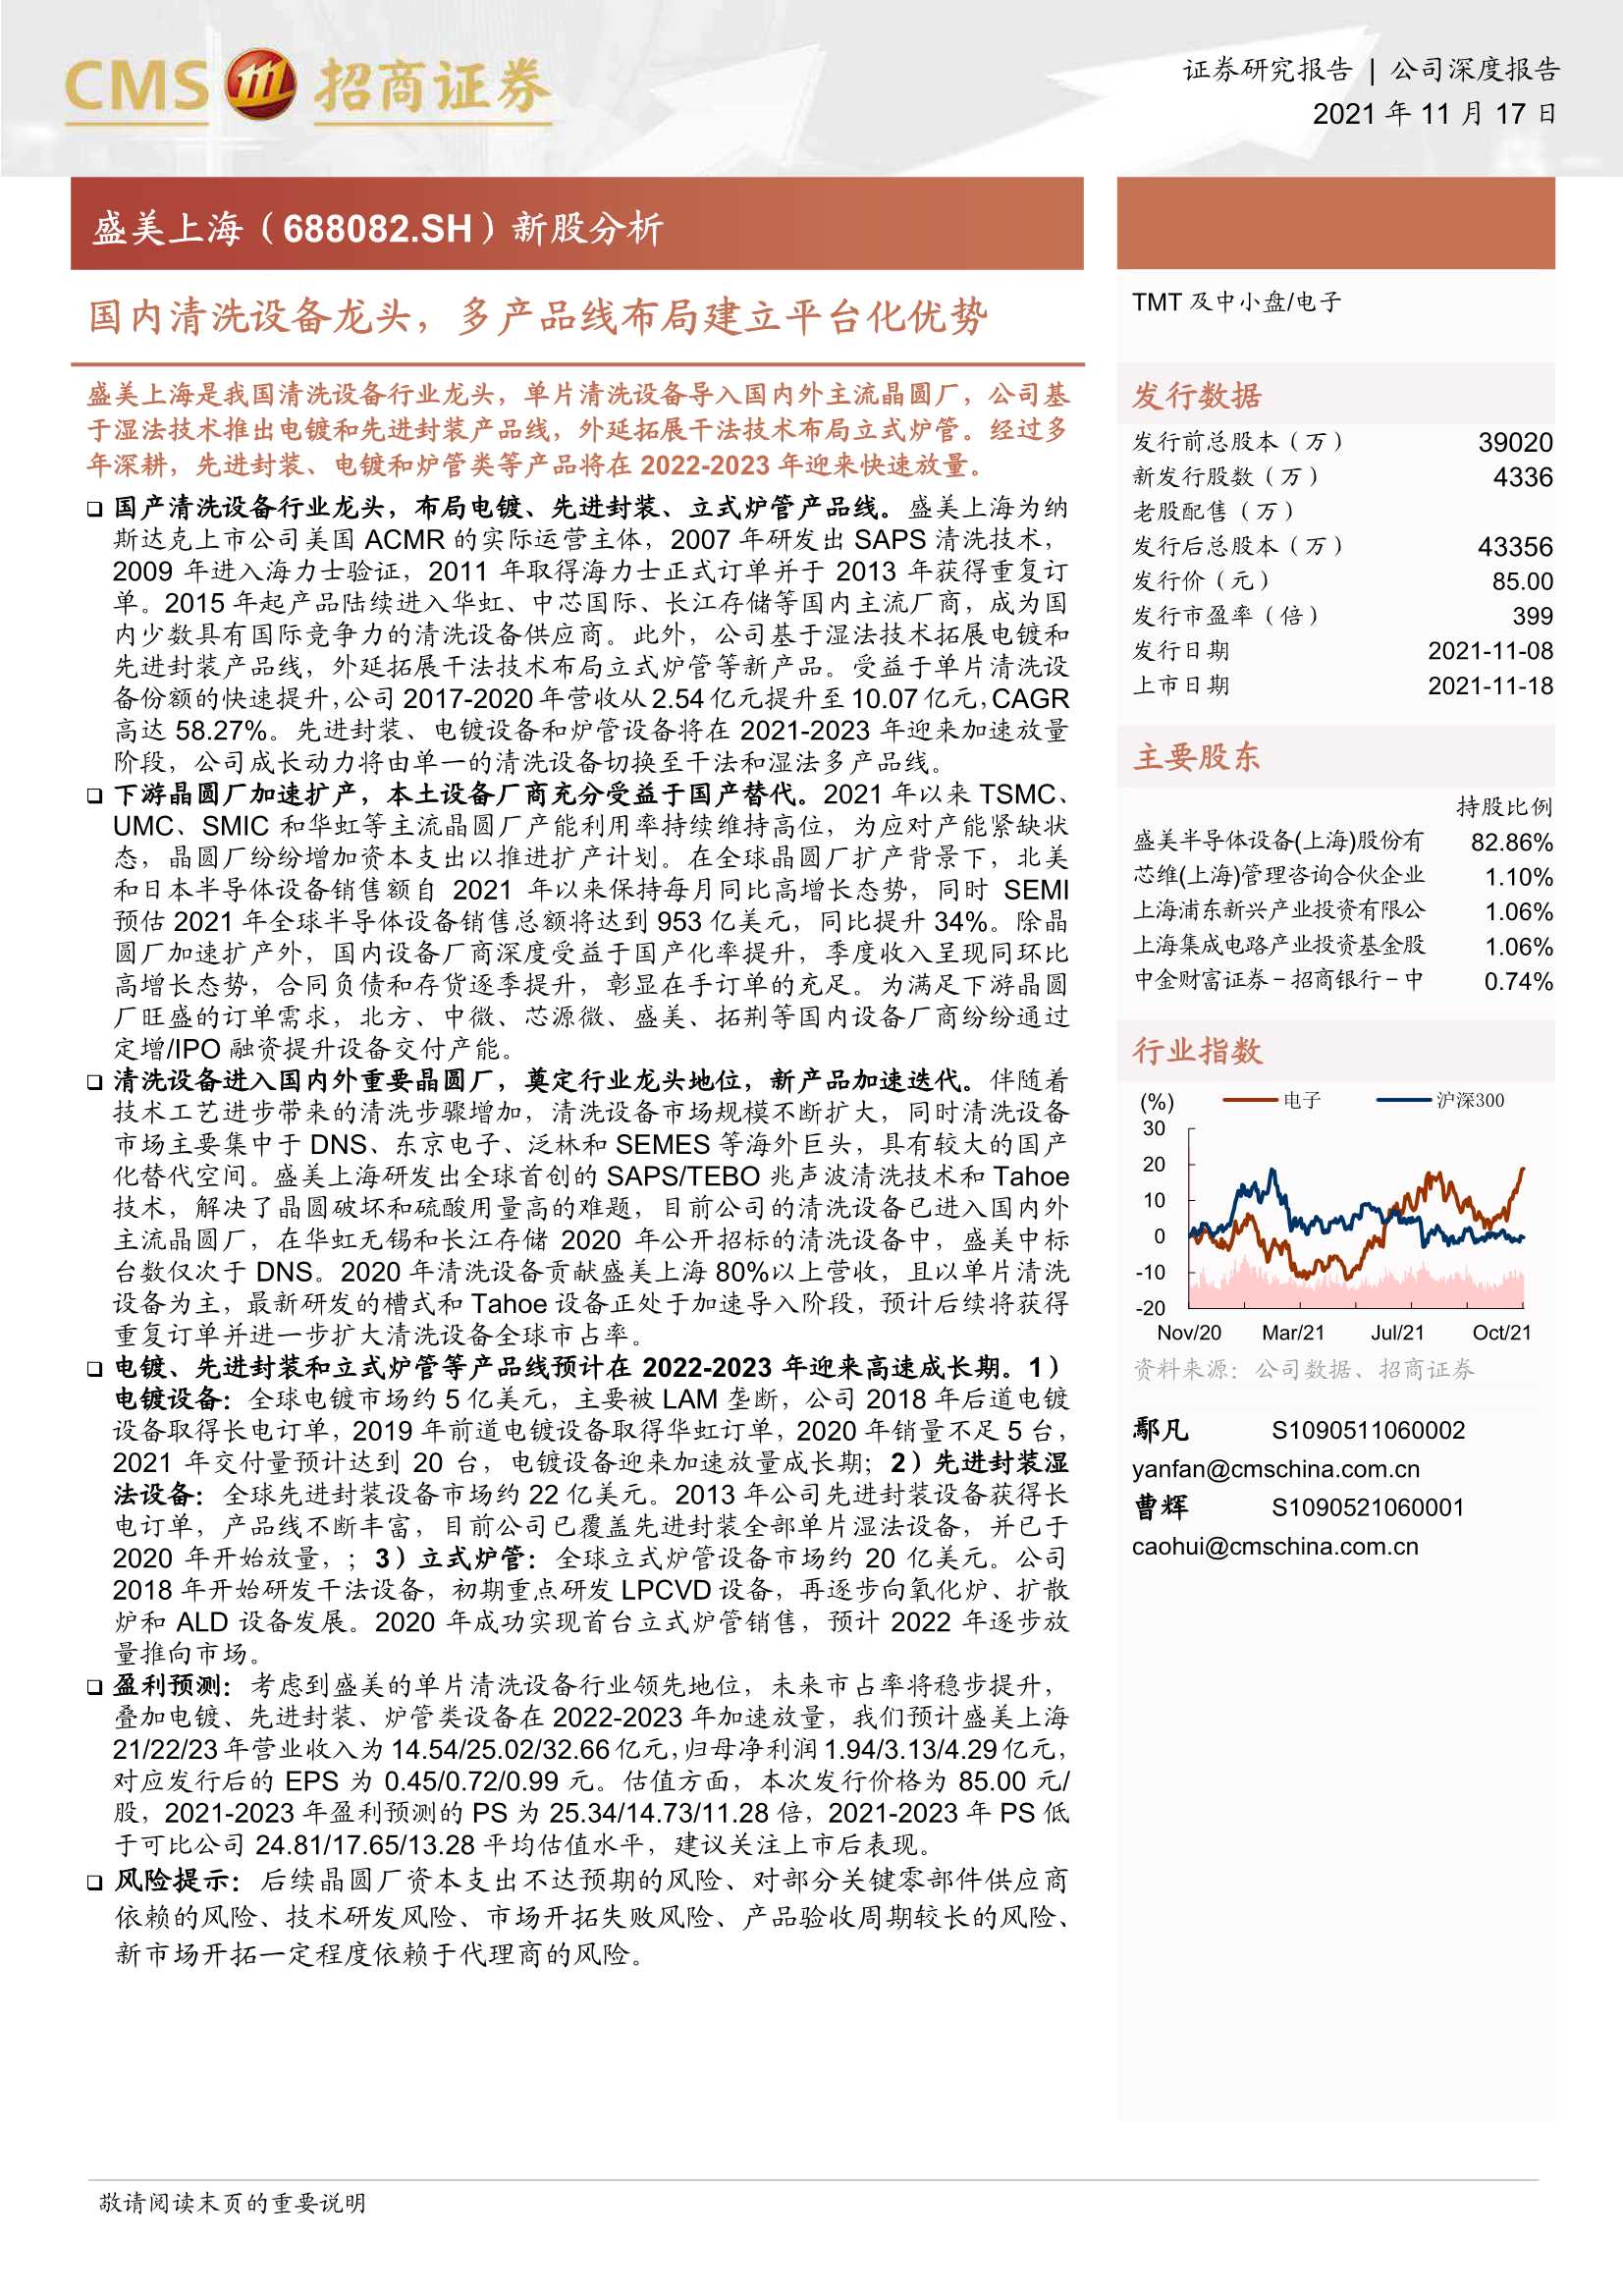 招商证券-盛美上海-688082-新股分析：国内清洗设备龙头，多产品线布局建立平台化优势-20211117-41页